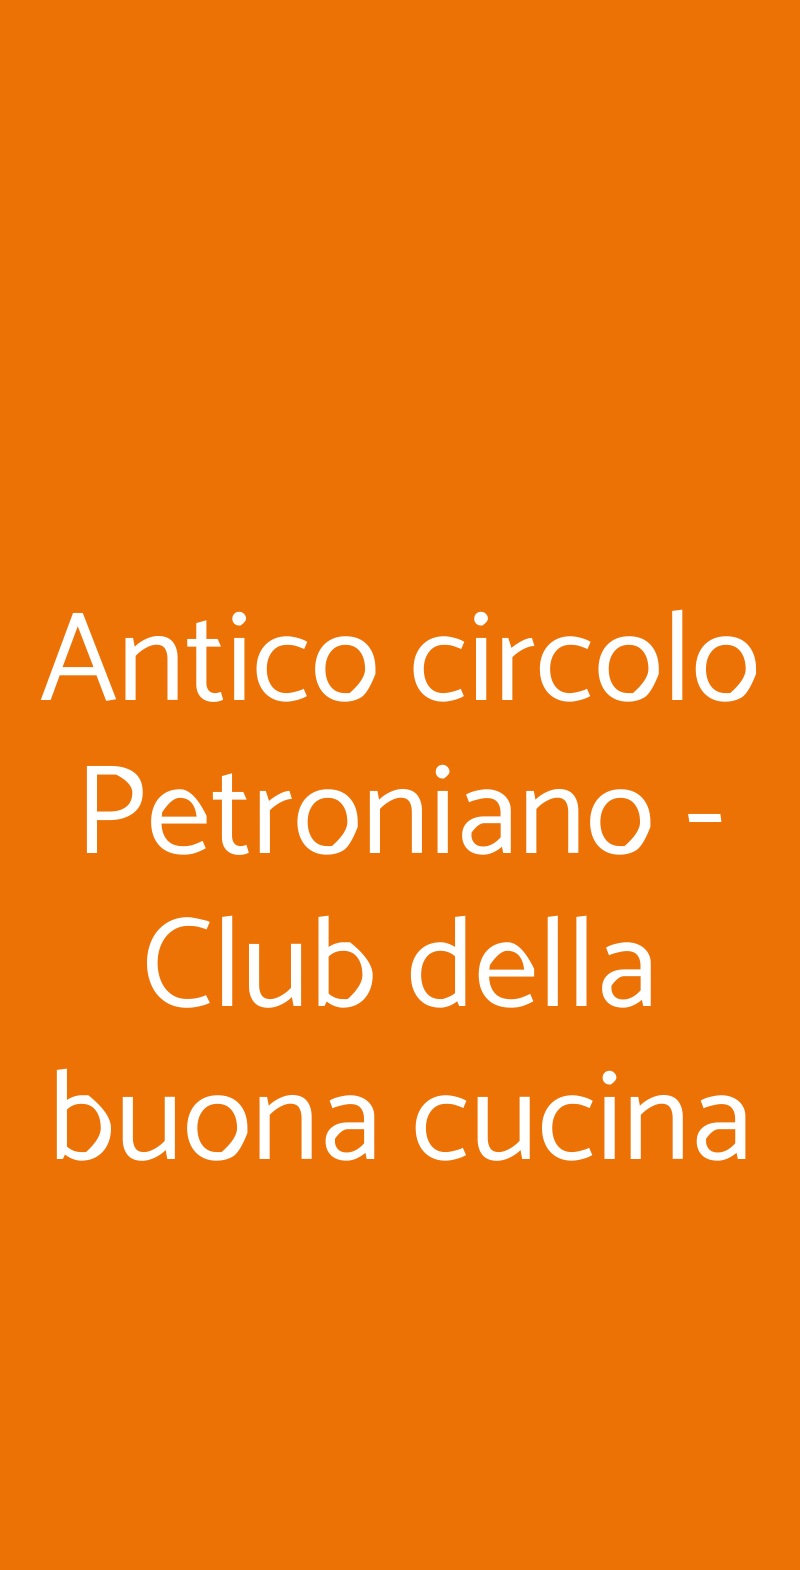 Antico circolo Petroniano - Club della buona cucina Bologna menù 1 pagina